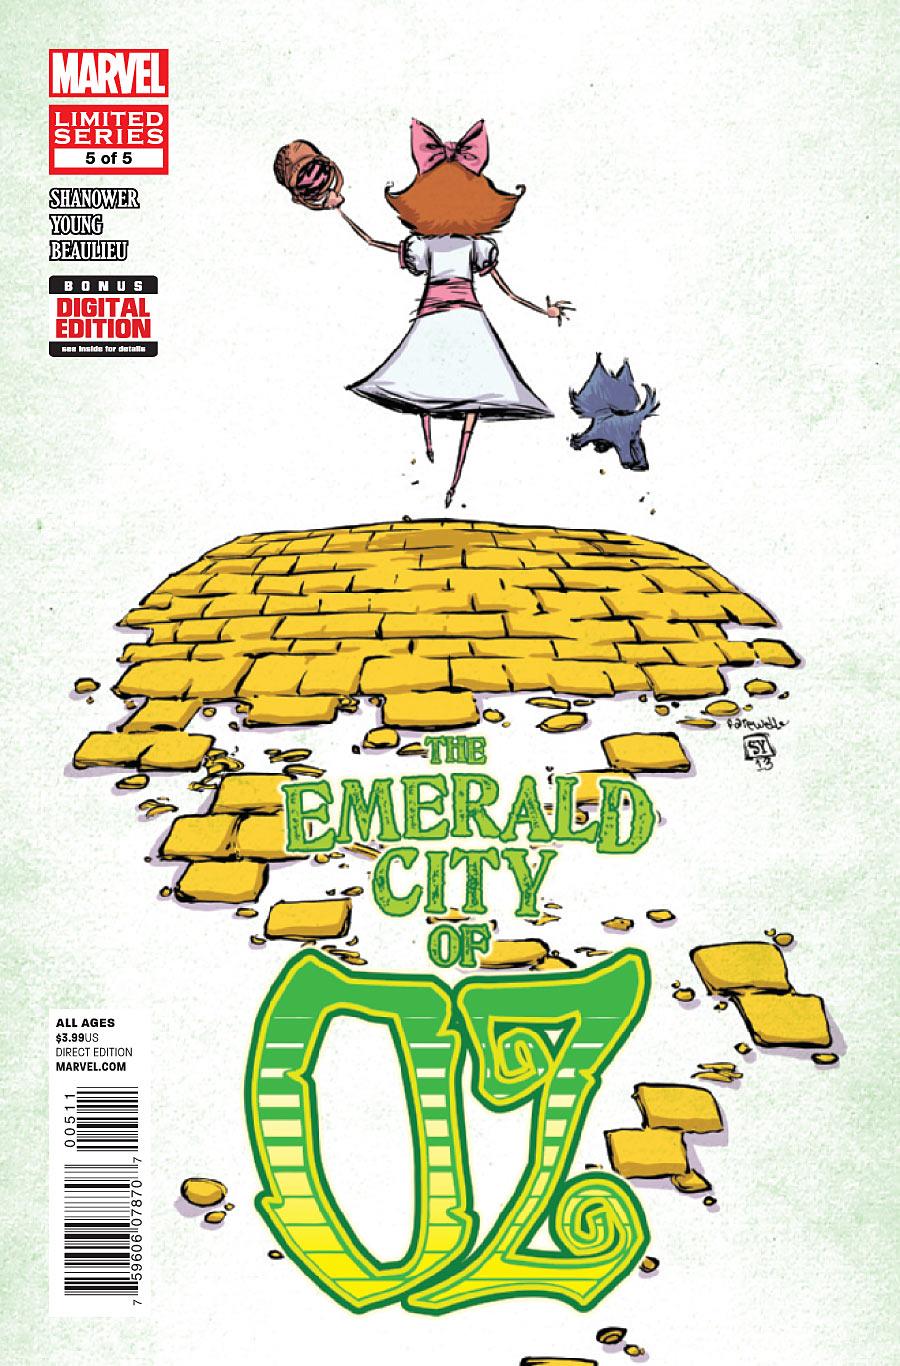 The Emerald City of OZ Vol. 1 #5